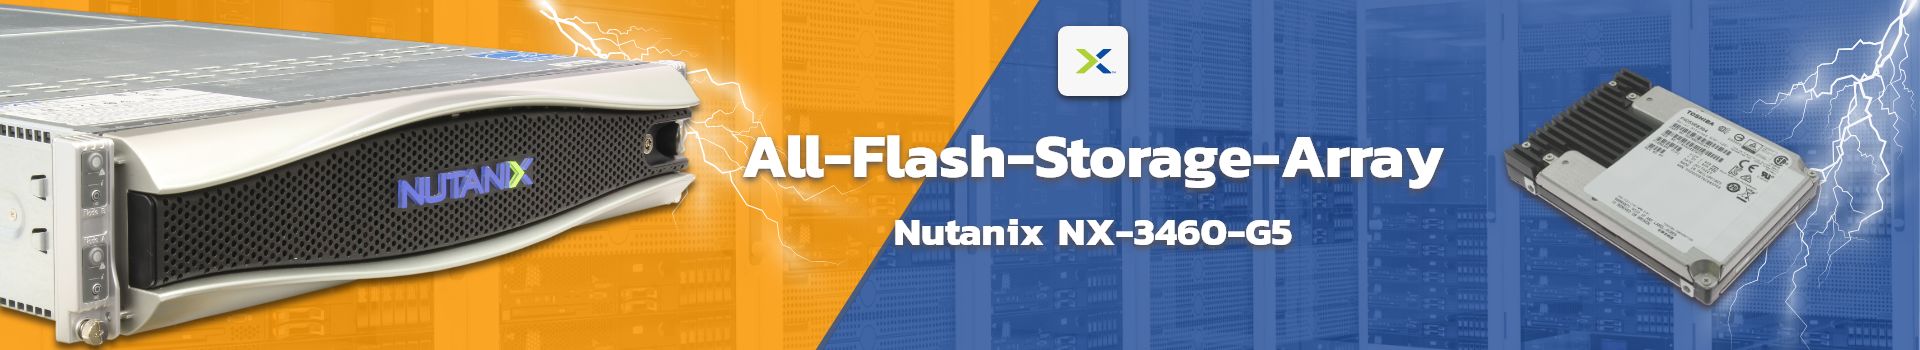 Nutanix NX-3460-G5 suchen